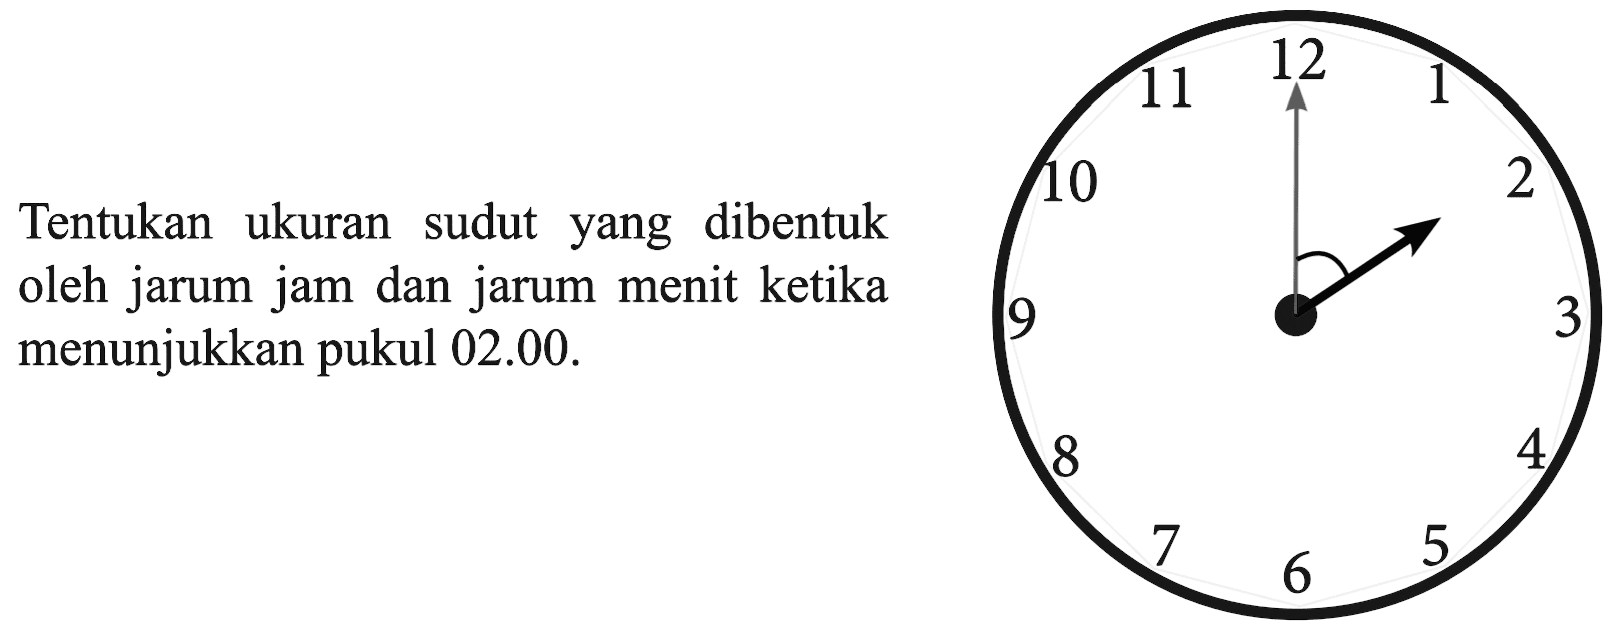 Tentukan ukuran sudut yang dibentuk oleh jarum jam dan jarum menit ketika menunjukkan pukul 02.00. 